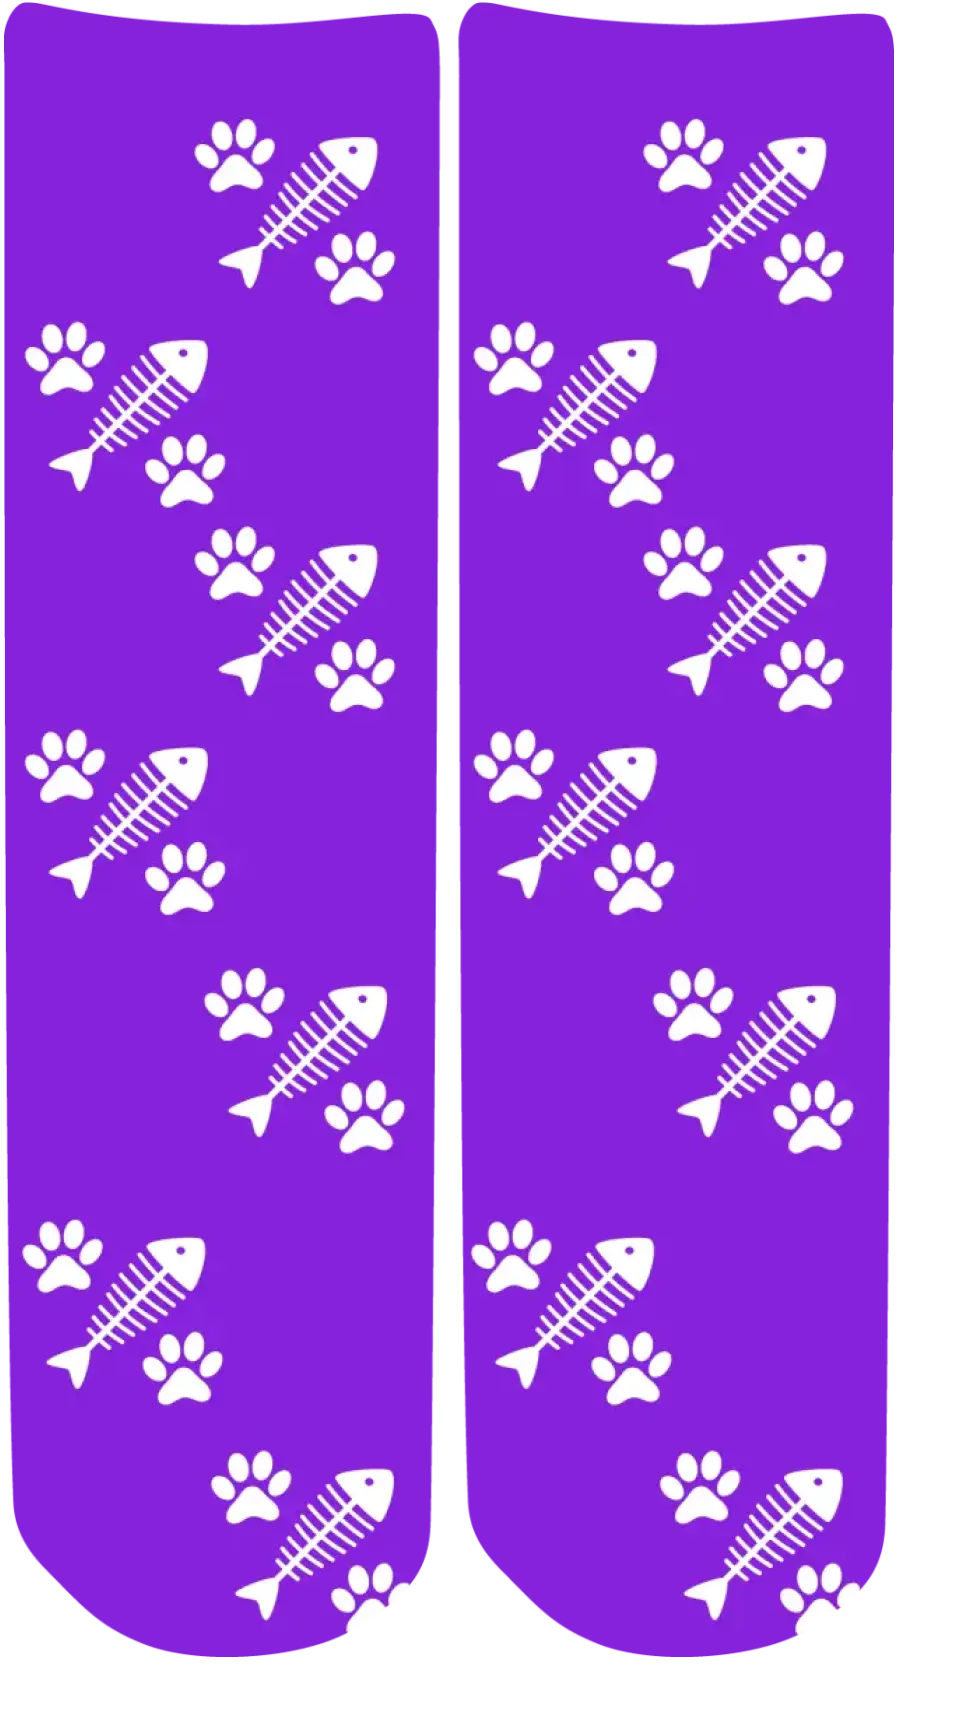 Personalised Face Socks - Pet Purple (CPawPattern)